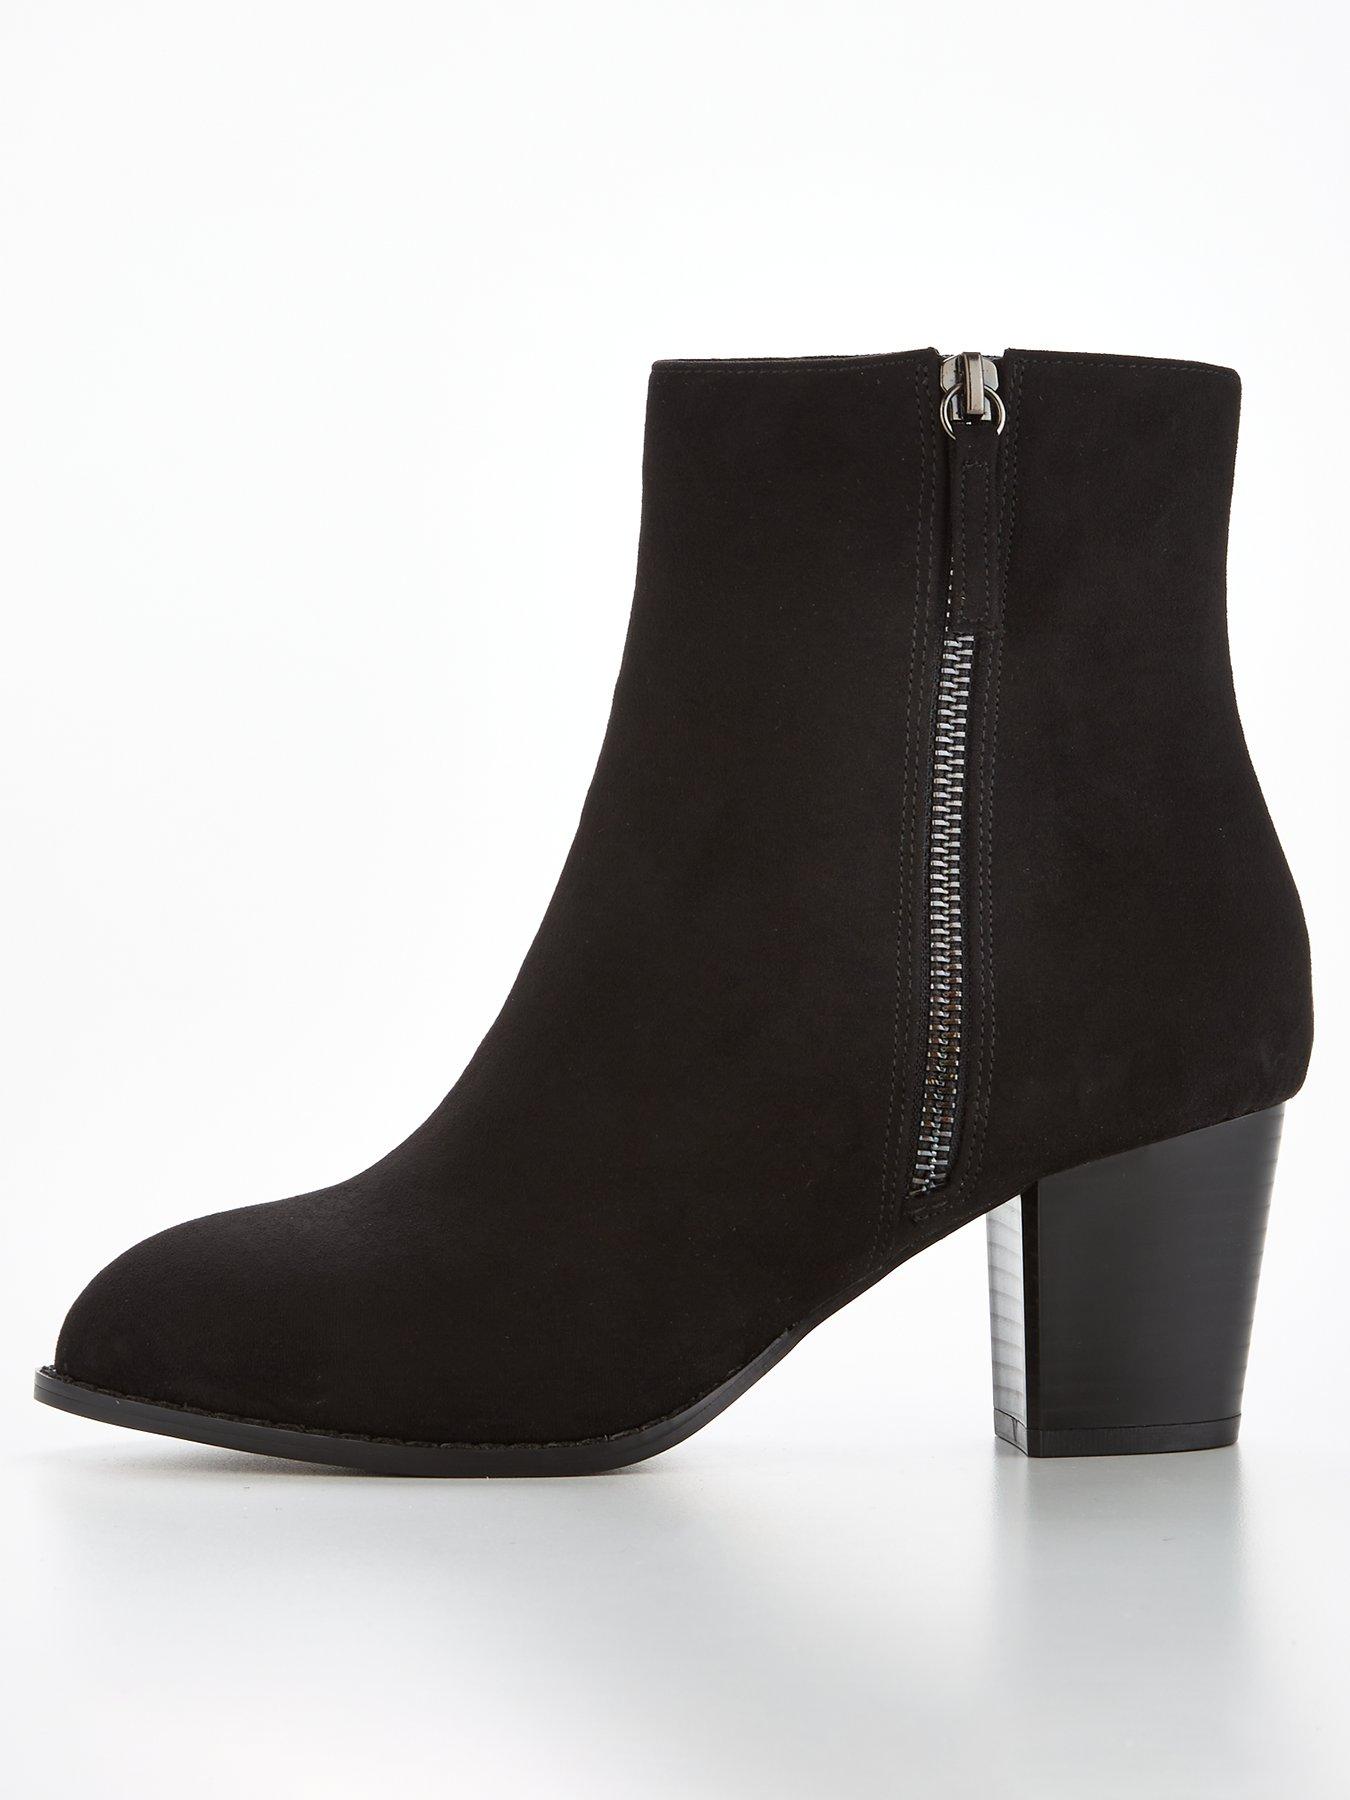 Rock Candy Women Heel Boots Brown Size 7 M Faux Fur Trim 3 Inch Heels | eBay